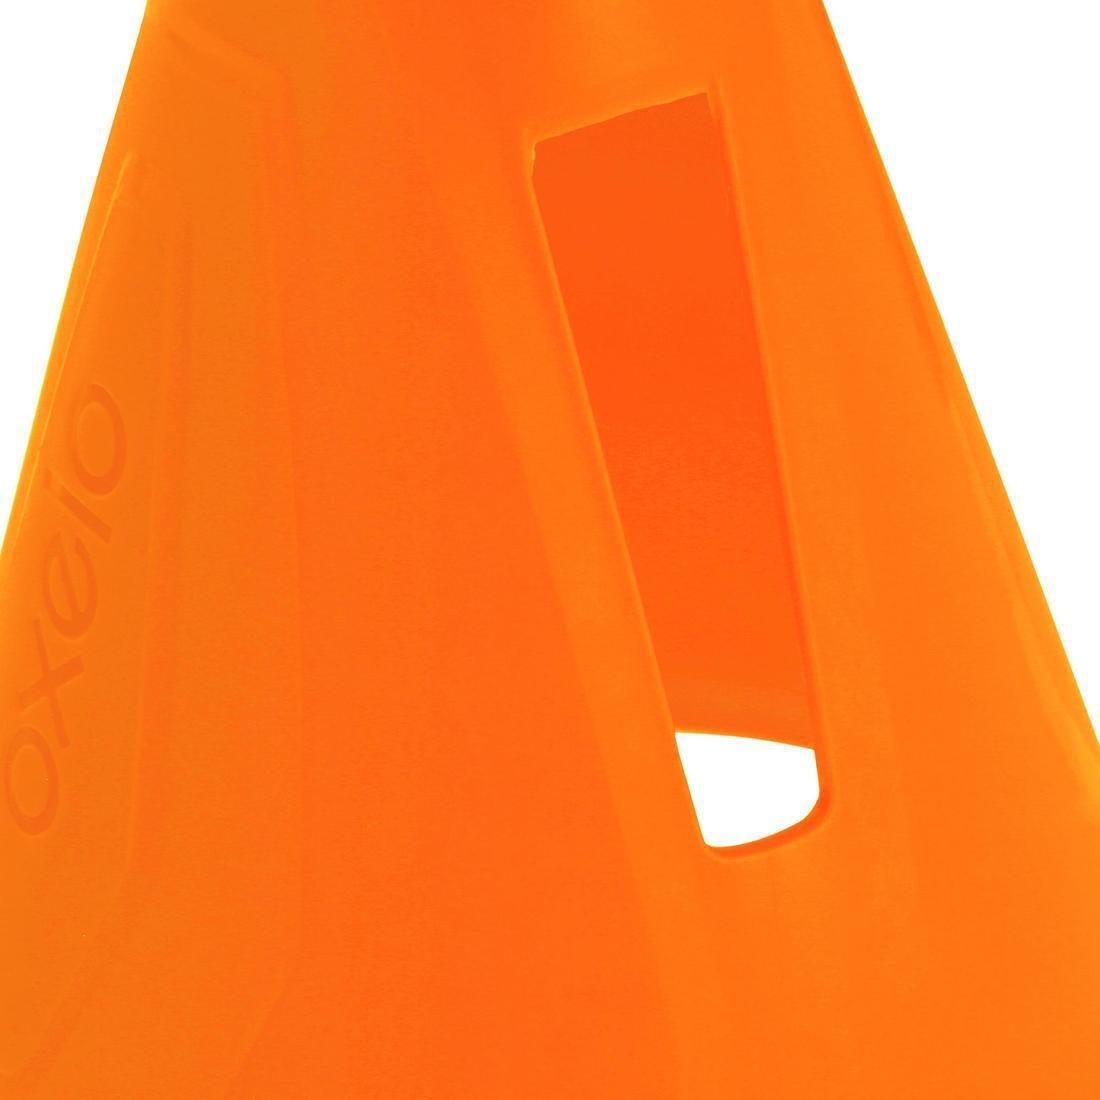 OXELO - Inline Skating Slalom Cones 10-Pack, Orange